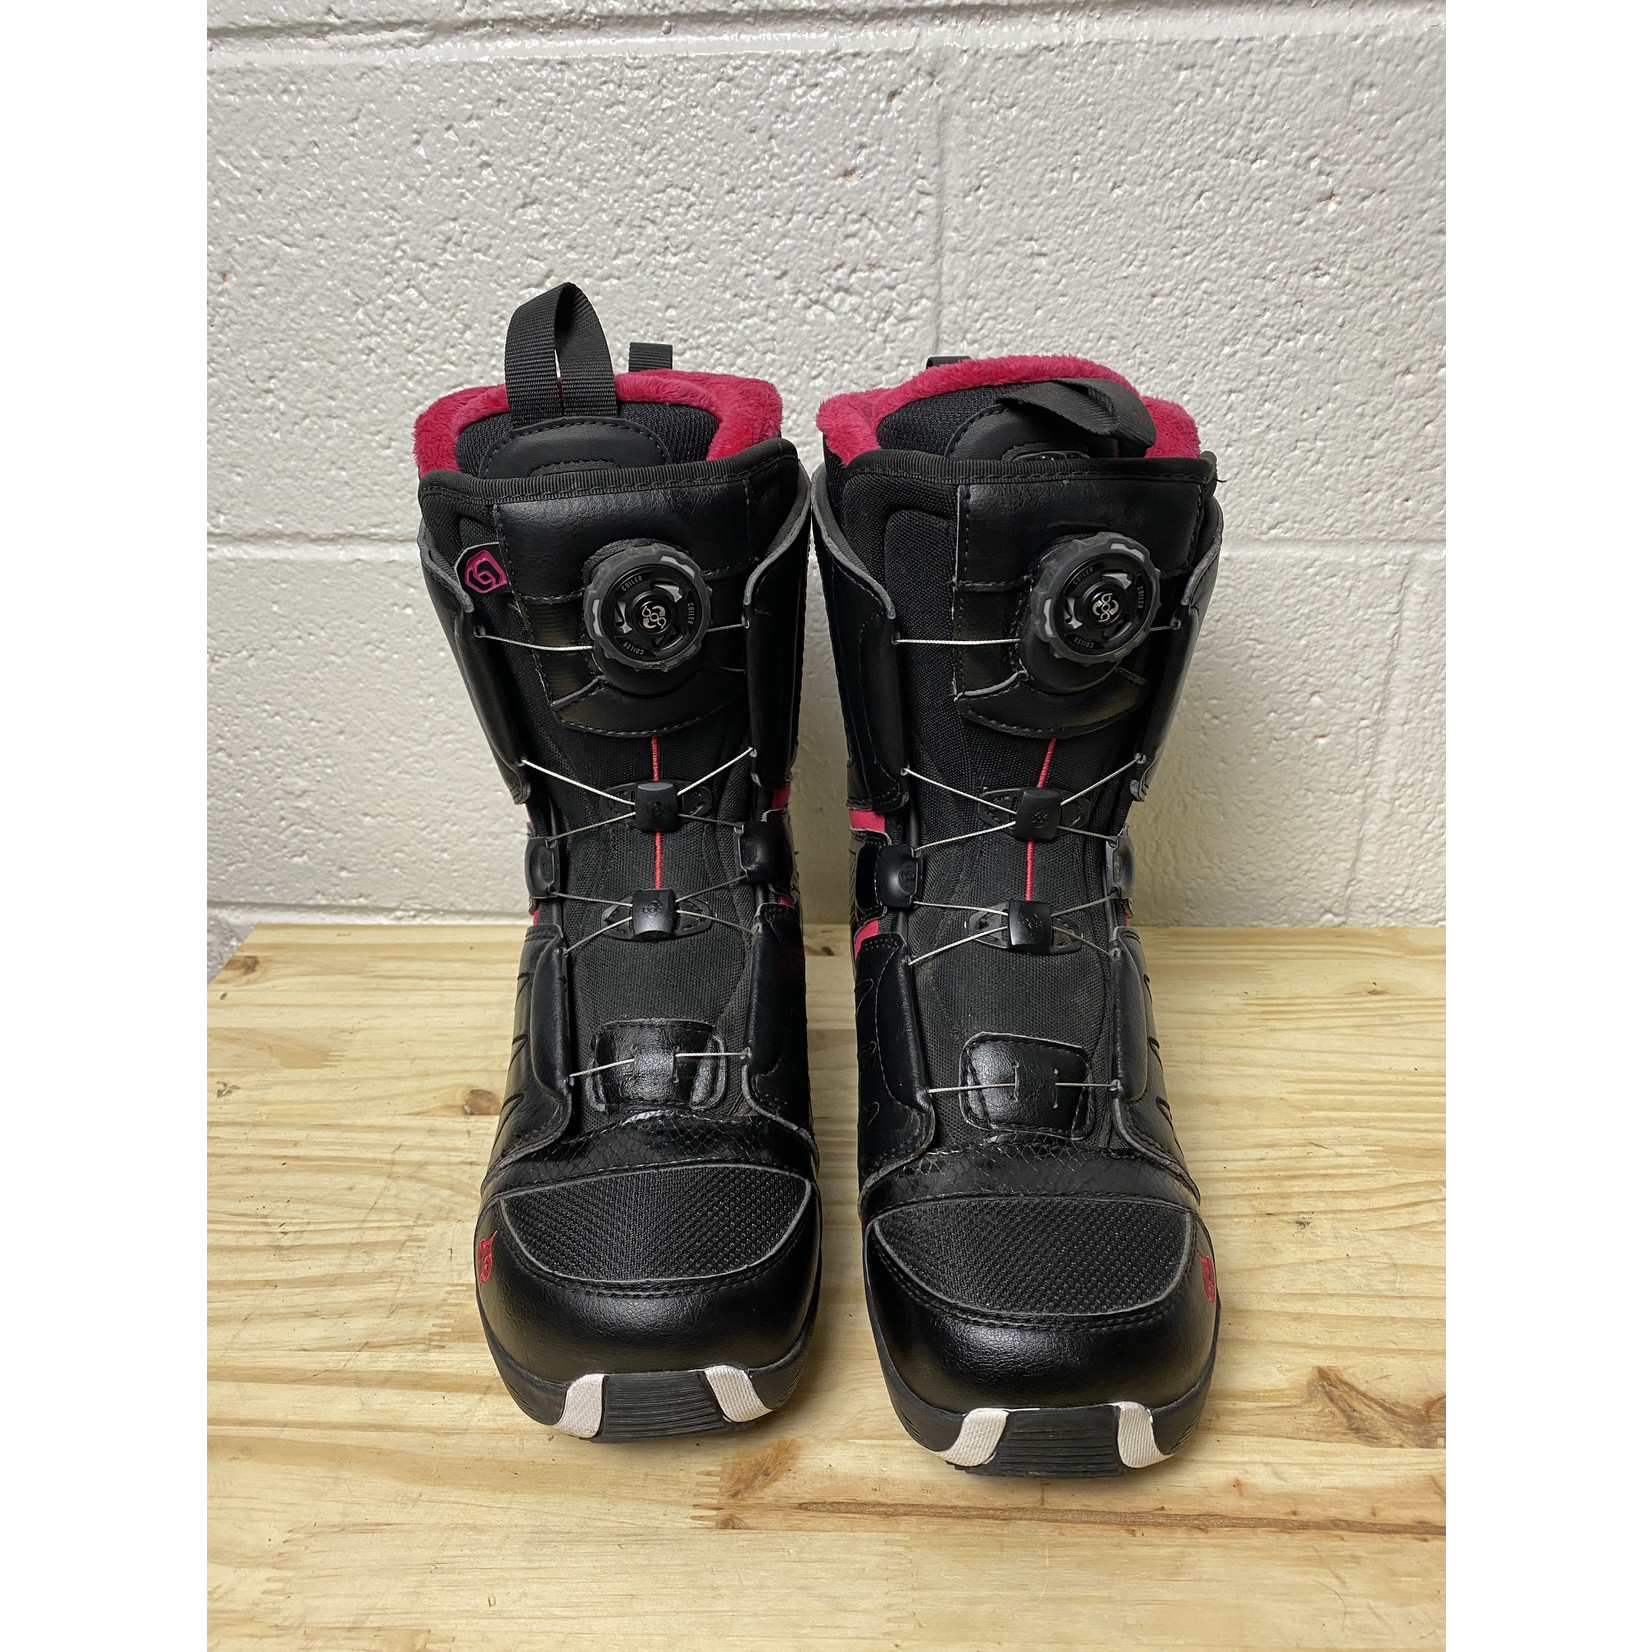 Salomon Salomon Pearl Boa Snowboard Boots - Black/Pink